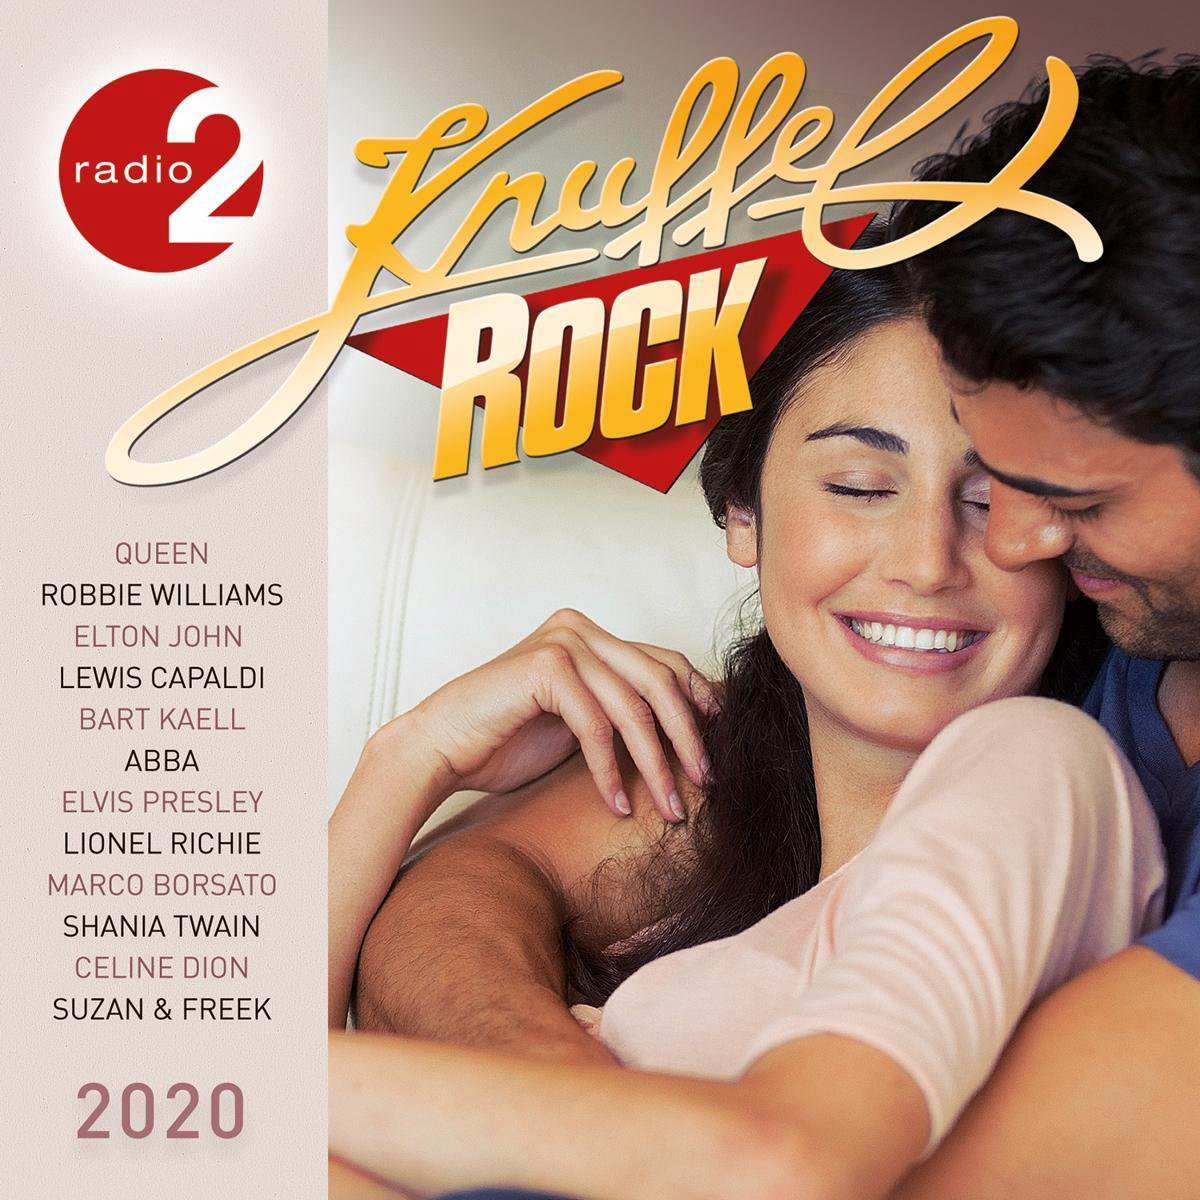 Radio 2 - Knuffelrock 2020, Radio 2 (België) | CD (album) | Muziek | bol.com